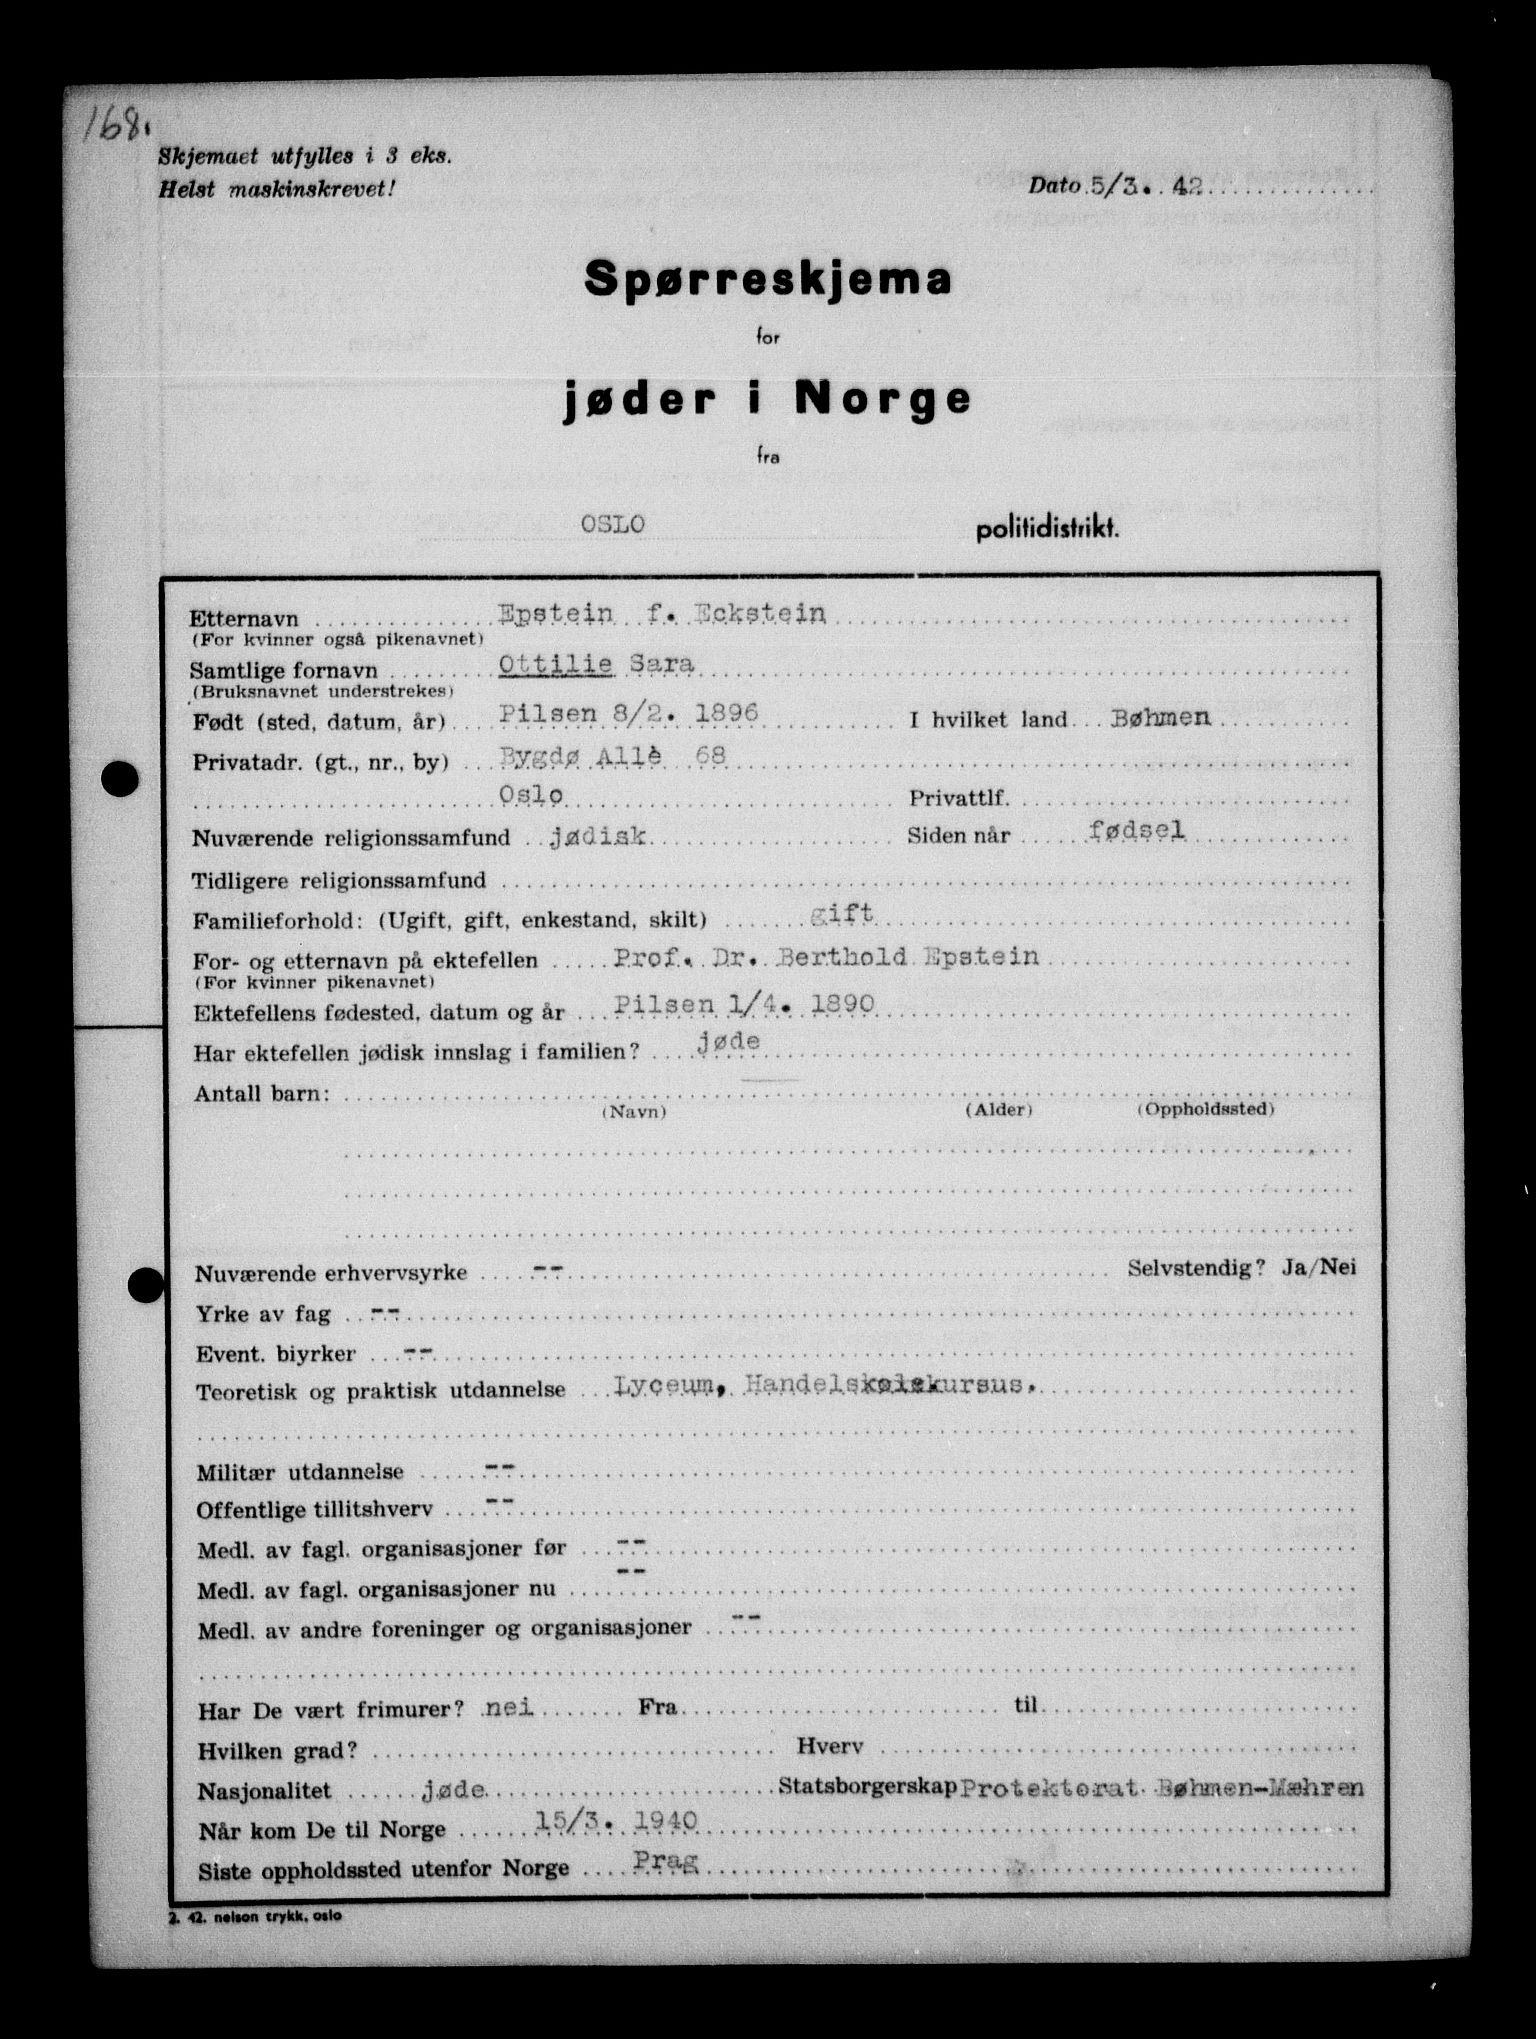 RA, Statspolitiet - Hovedkontoret / Osloavdelingen, G/Ga/L0009: Spørreskjema for jøder i Norge, Oslo Alexander-Gutman, 1942, s. 168